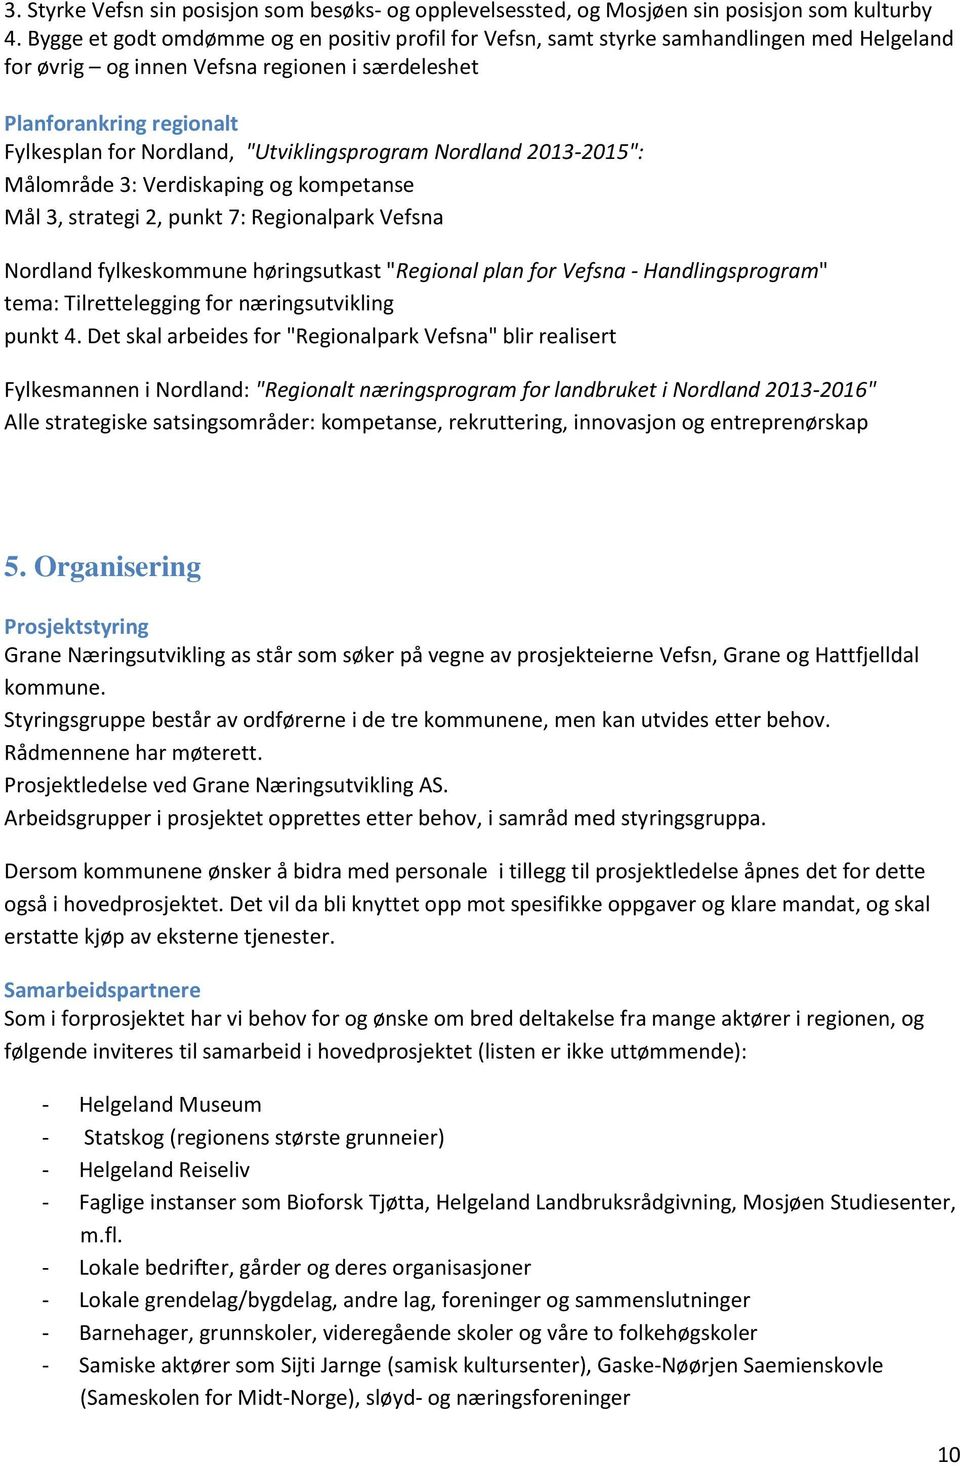 "Utviklingsprogram Nordland 2013-2015": Målområde 3: Verdiskaping og kompetanse Mål 3, strategi 2, punkt 7: Regionalpark Vefsna Nordland fylkeskommune høringsutkast "Regional plan for Vefsna -